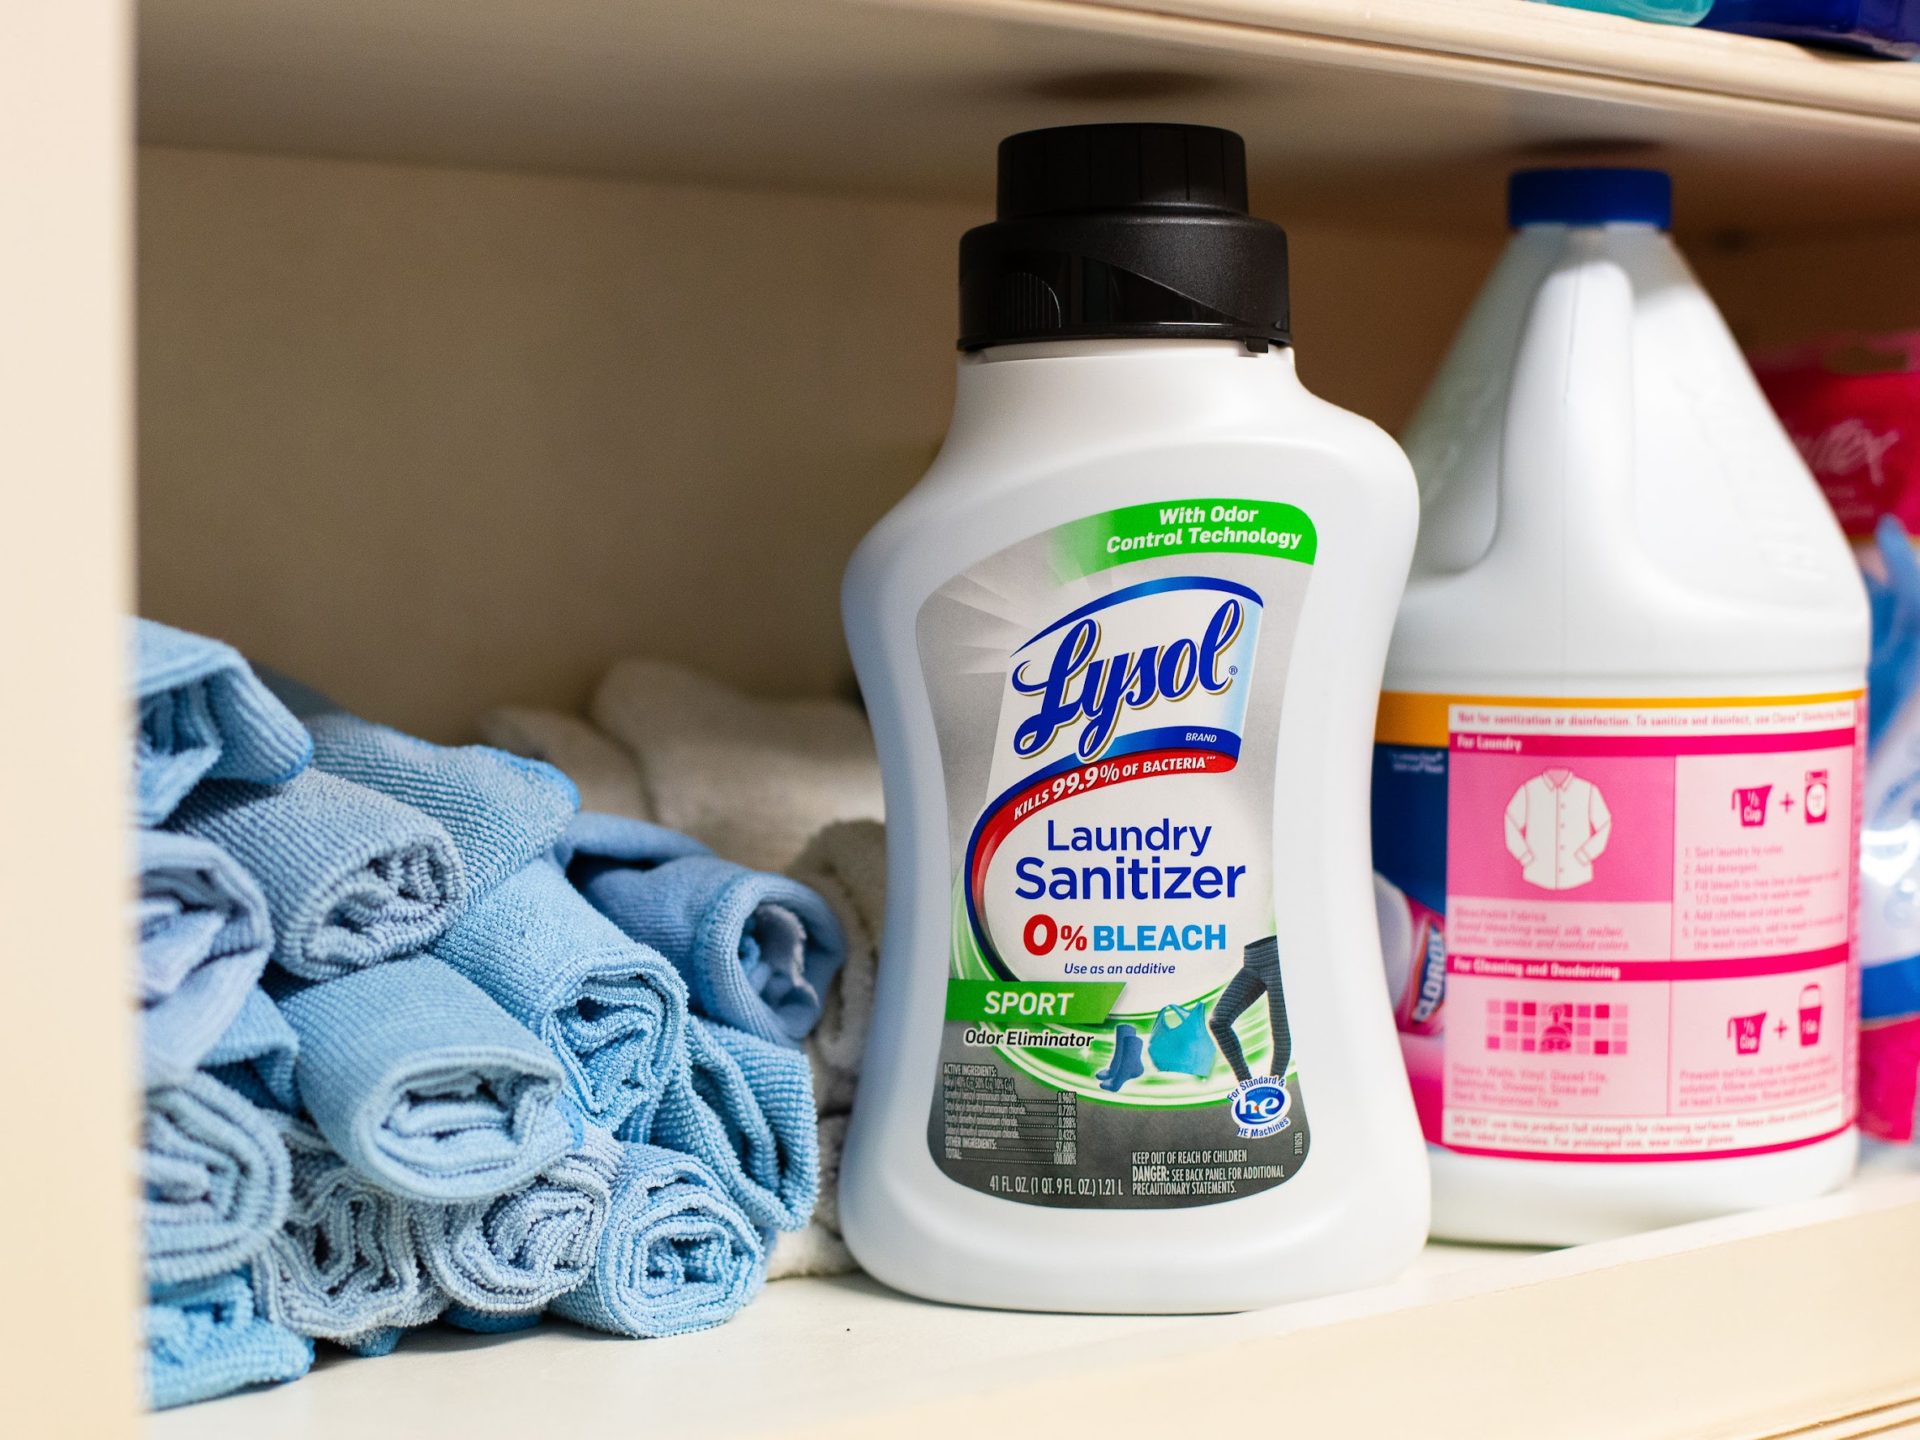 Lysol Laundry Sanitizer As Low As $1.99 At Kroger (Regular Price $7.99)